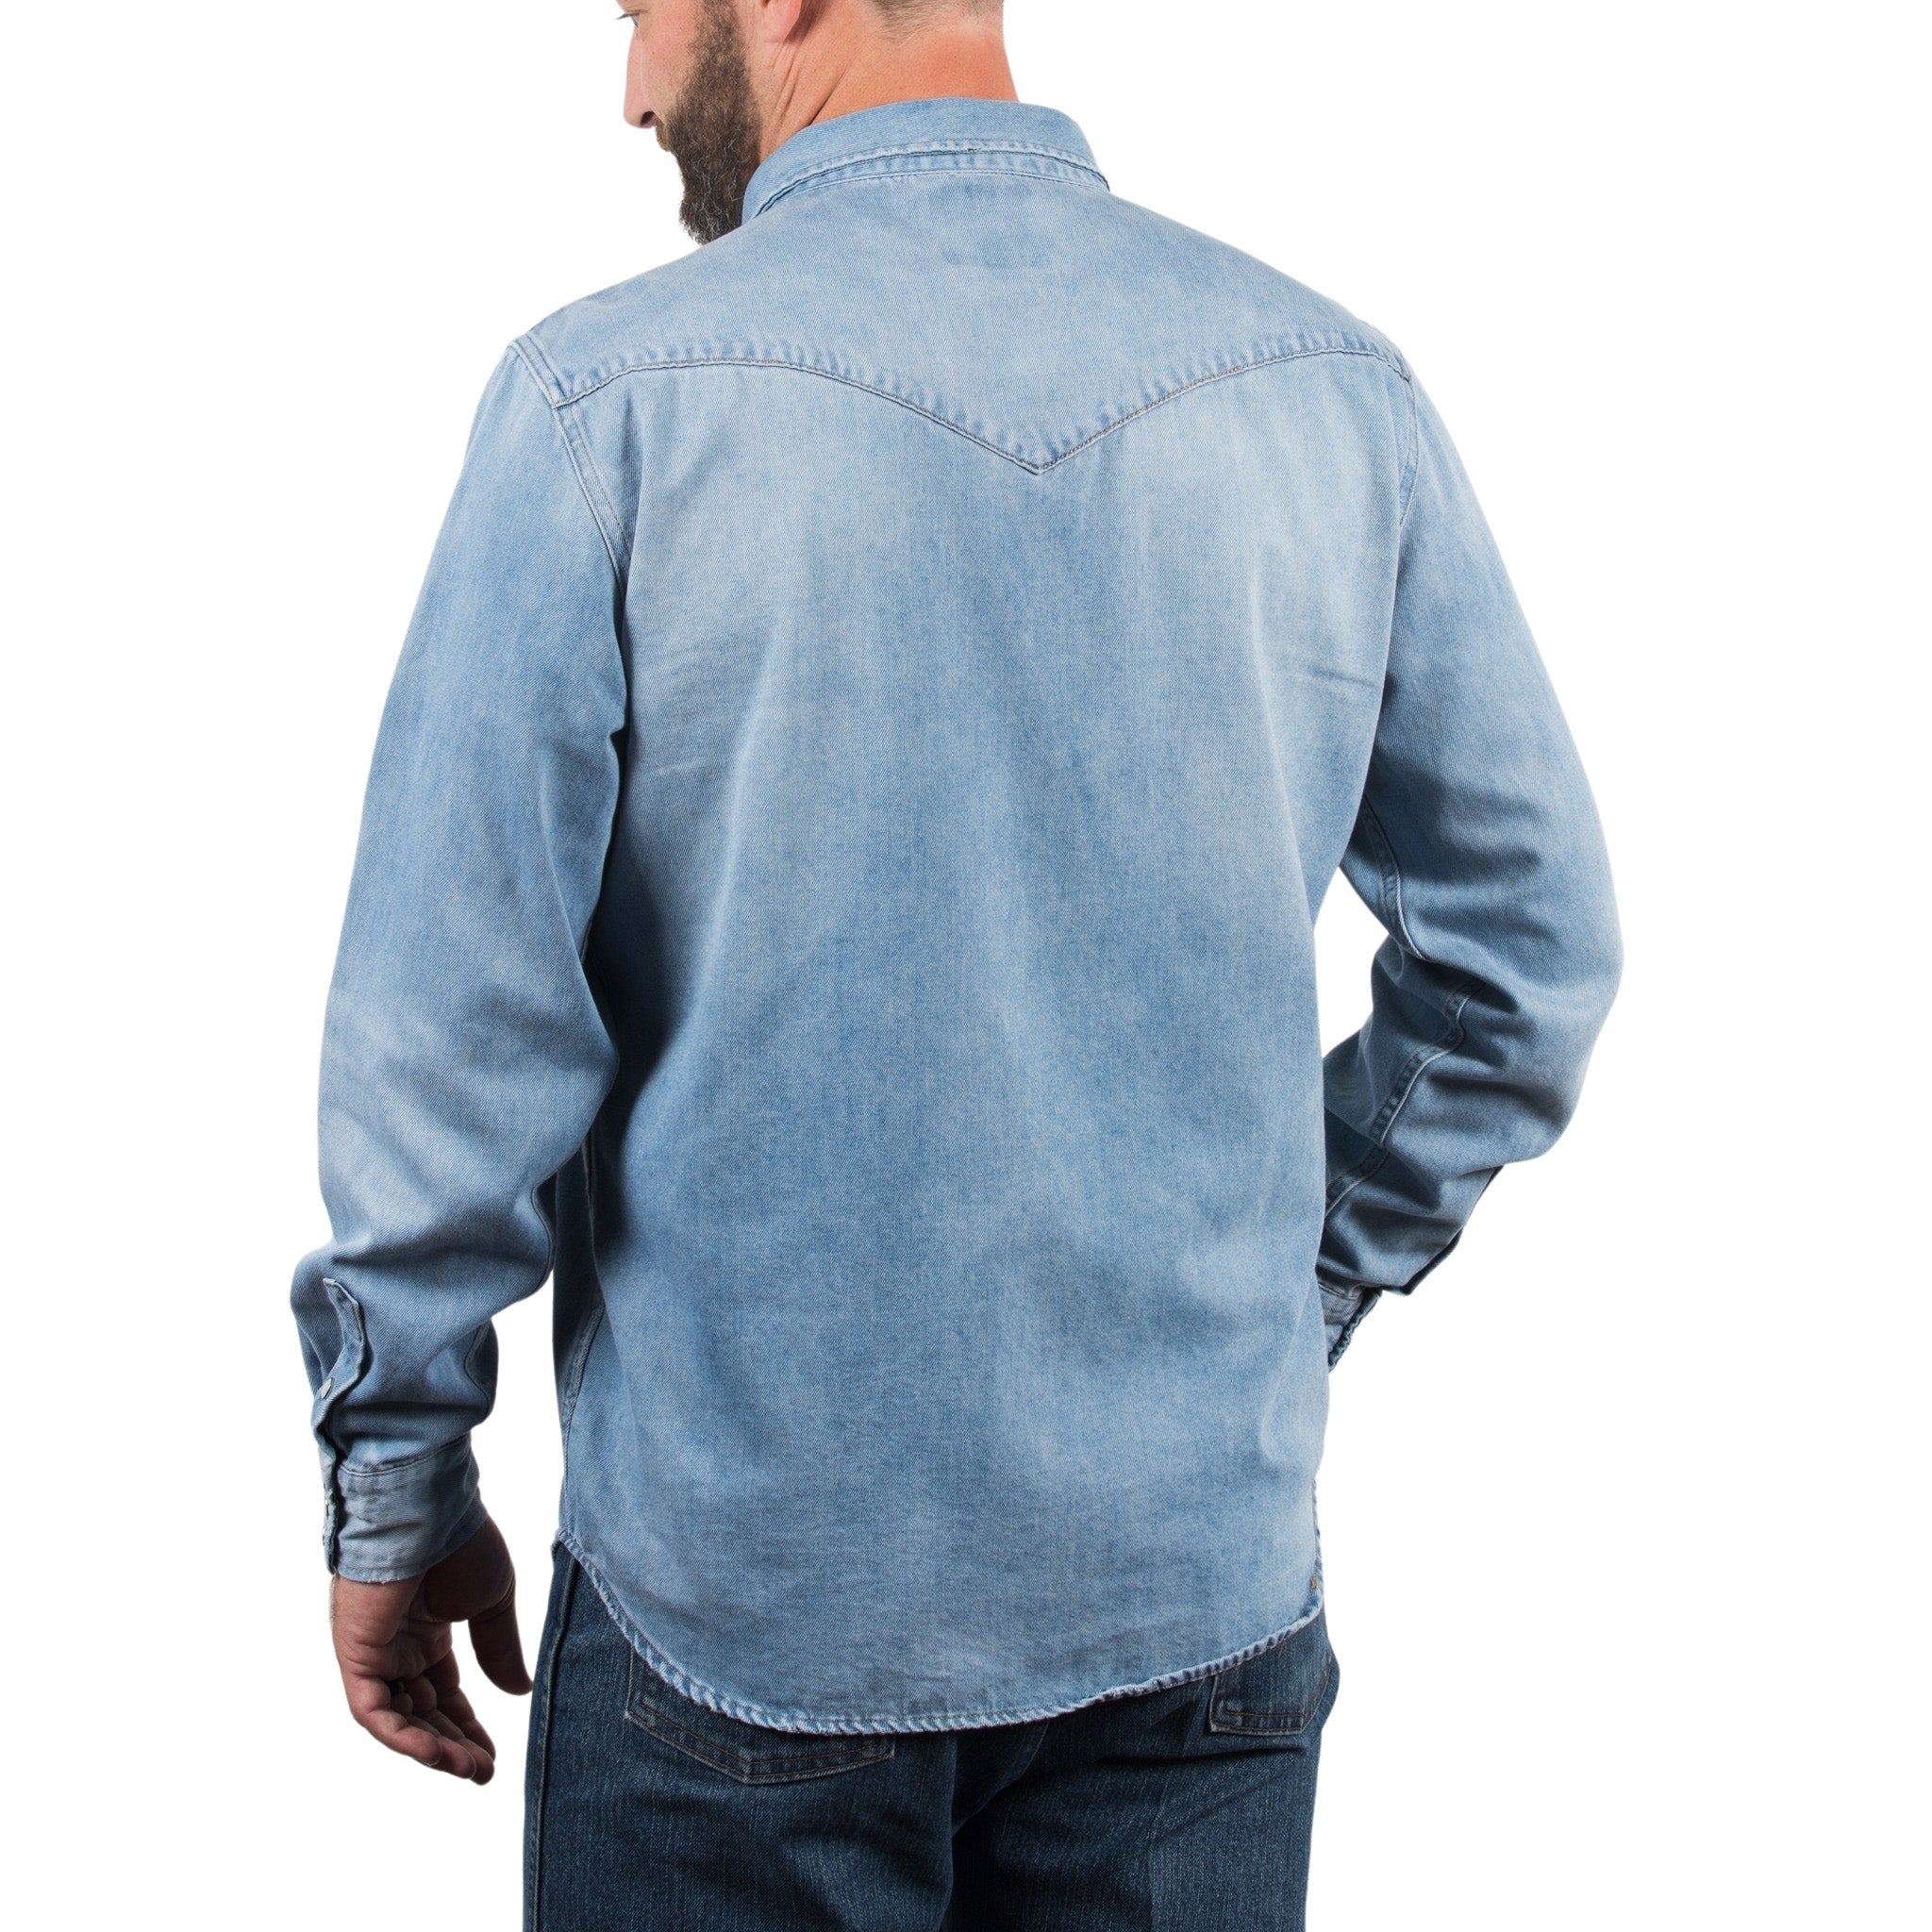 Saints & Hearts Button Front Blue Denim Shirt - Sizes Small - Large